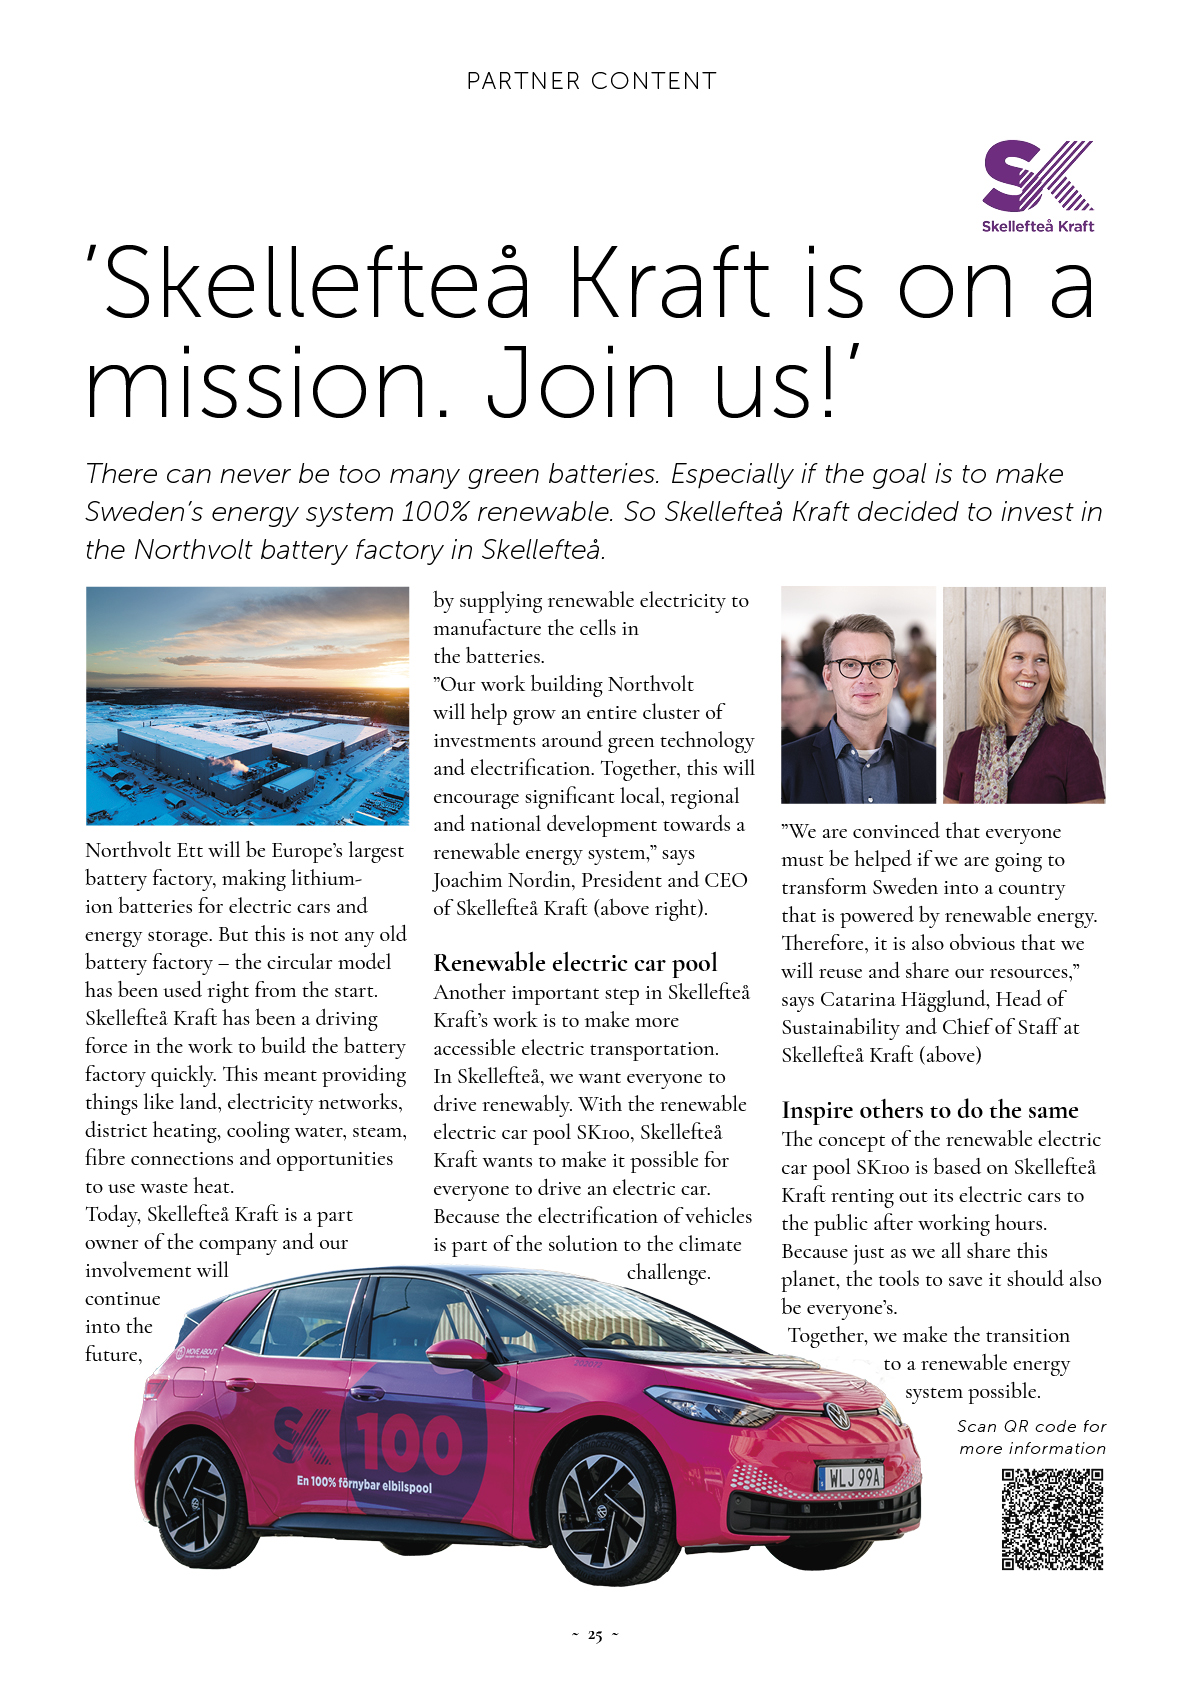 'Skellefteå Kraft is on a mission. Join us!'